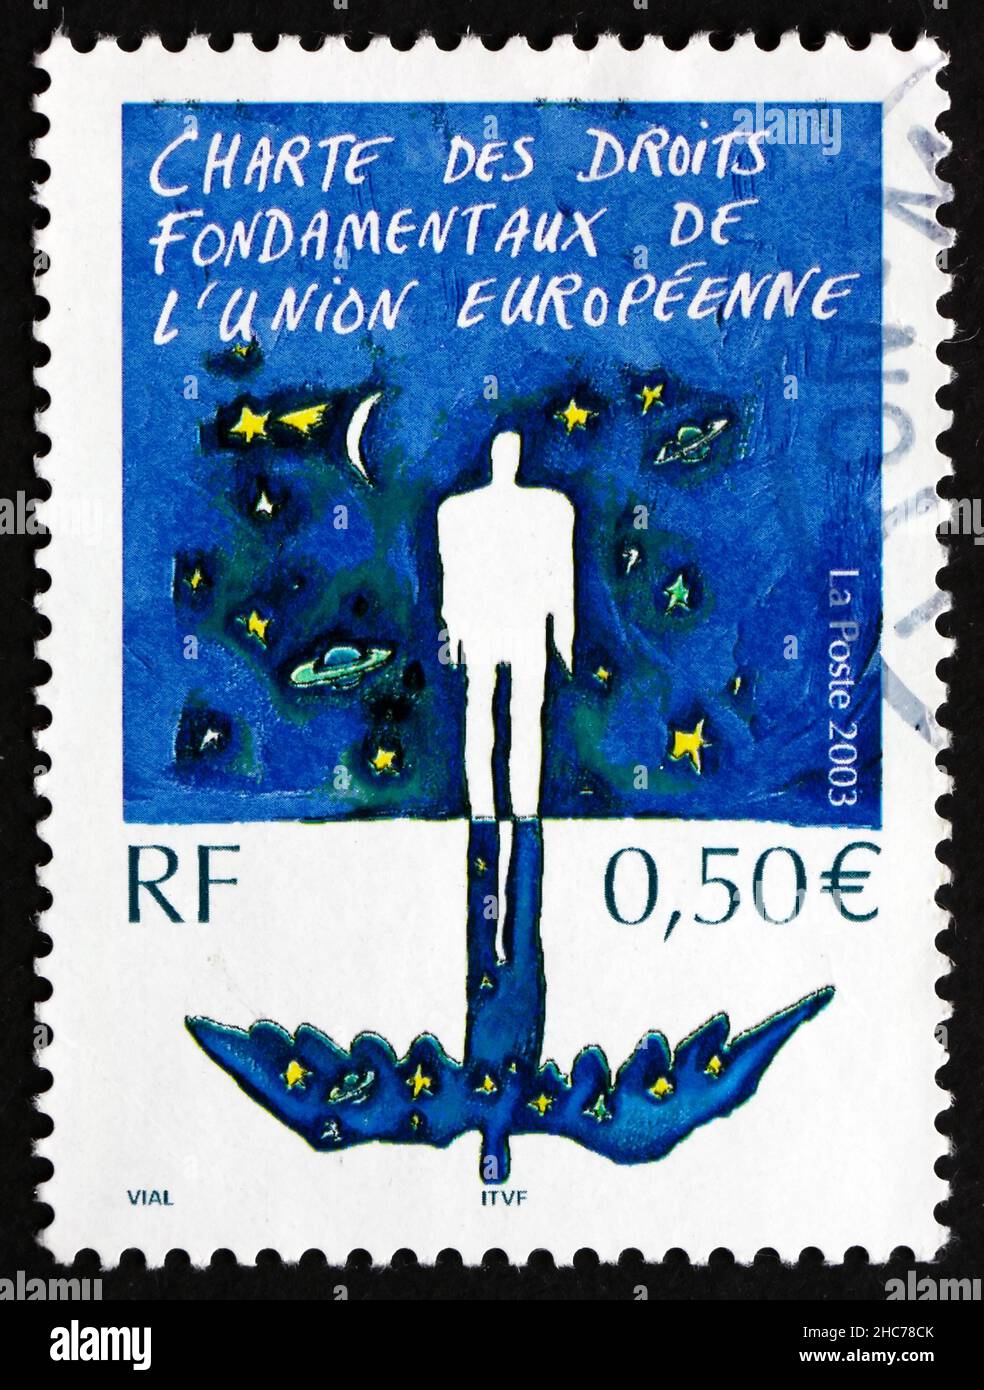 FRANKREICH - UM 2003: Eine in Frankreich gedruckte Marke zeigt die Charta der Grundrechte der Europäischen Union, um 2003 Stockfoto